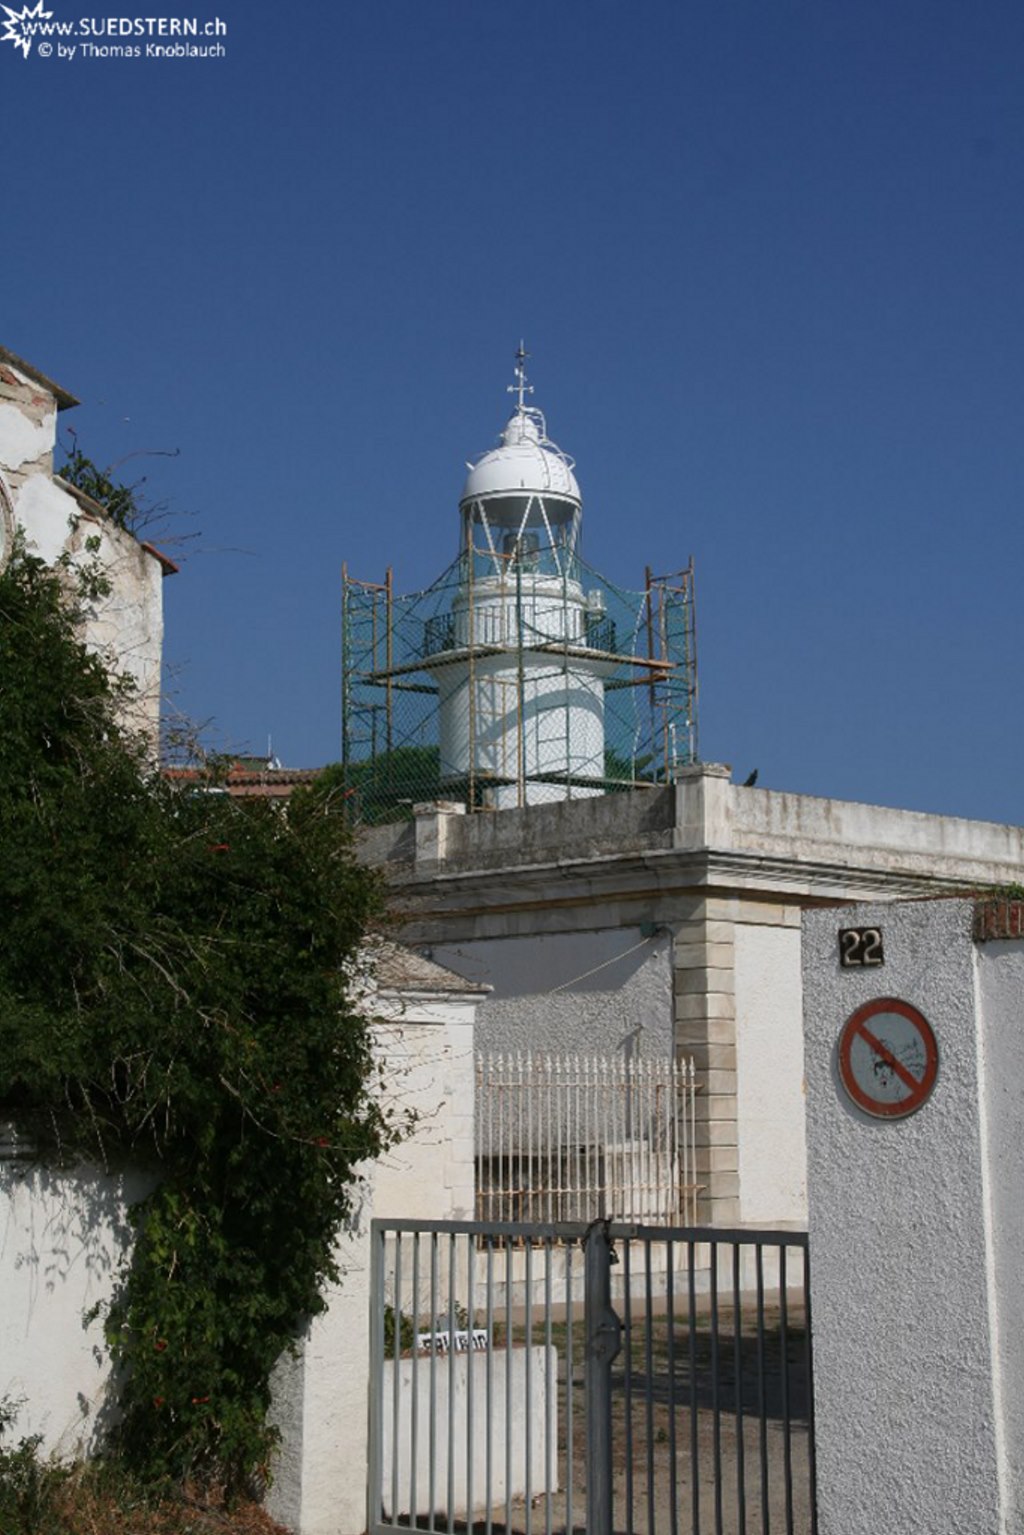 2008-09-03 - Lighthouse in Rosses, spain, spain